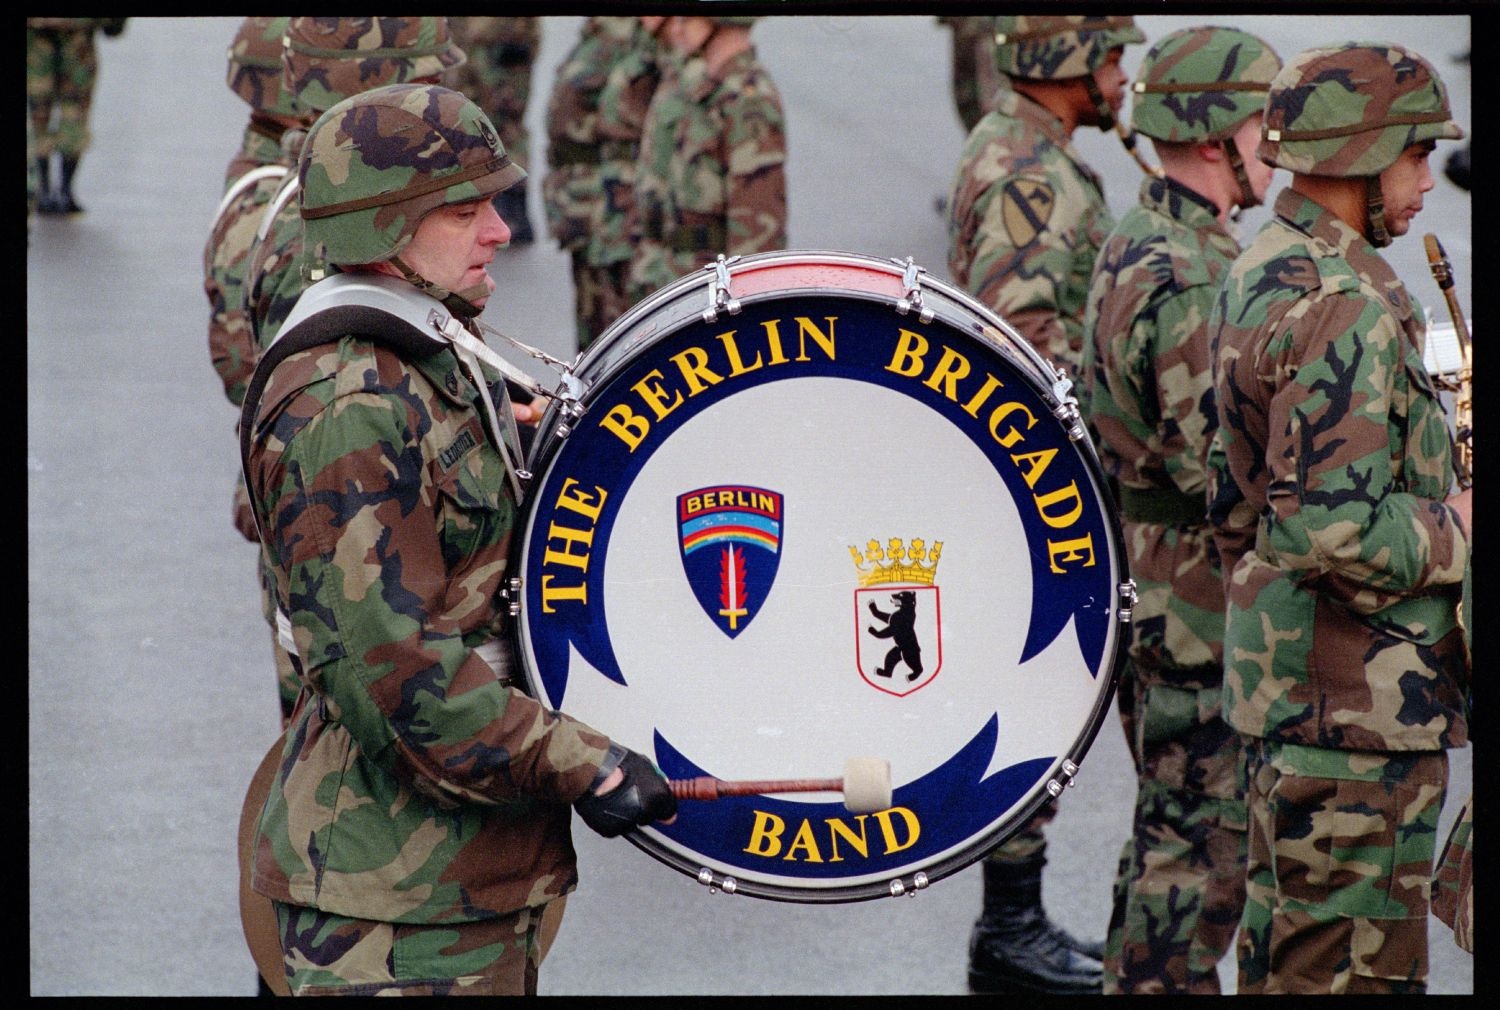 Fotografie: Verleihung des Fahnenbandes der Bundesrepublik Deutschland an Einheiten der U.S. Army Berlin in Berlin-Lichterfelde